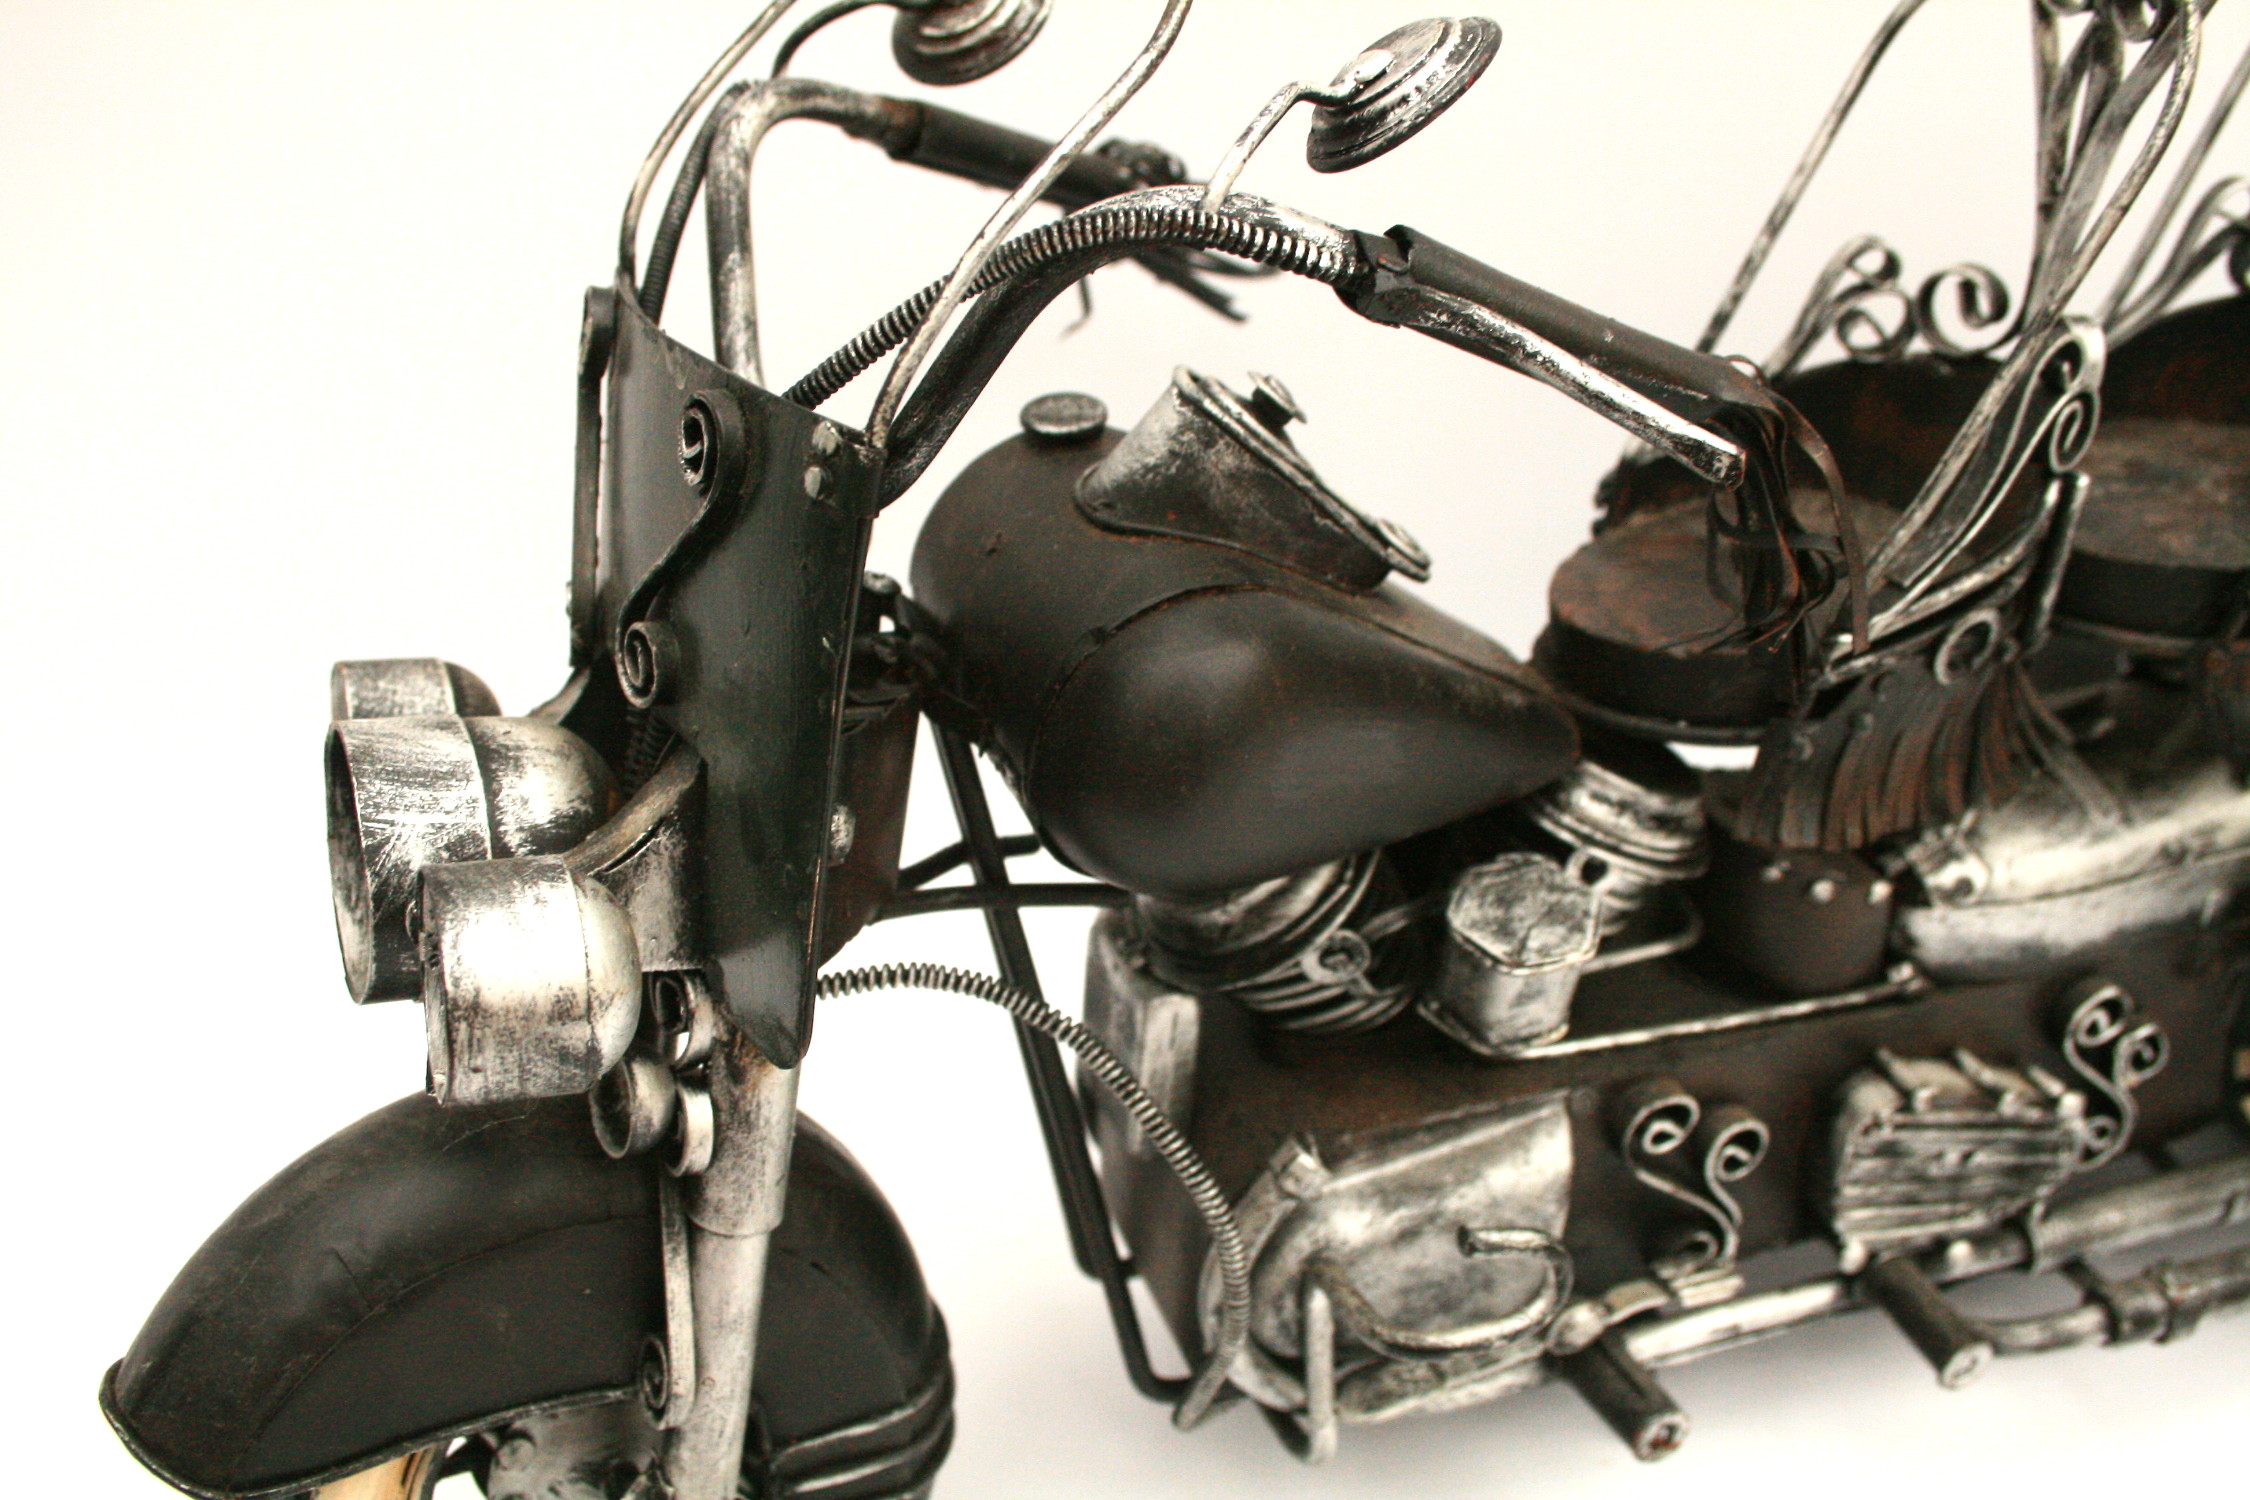 Vintage Metal Model Motor Bike Steam Punk Style - Image 2 of 6